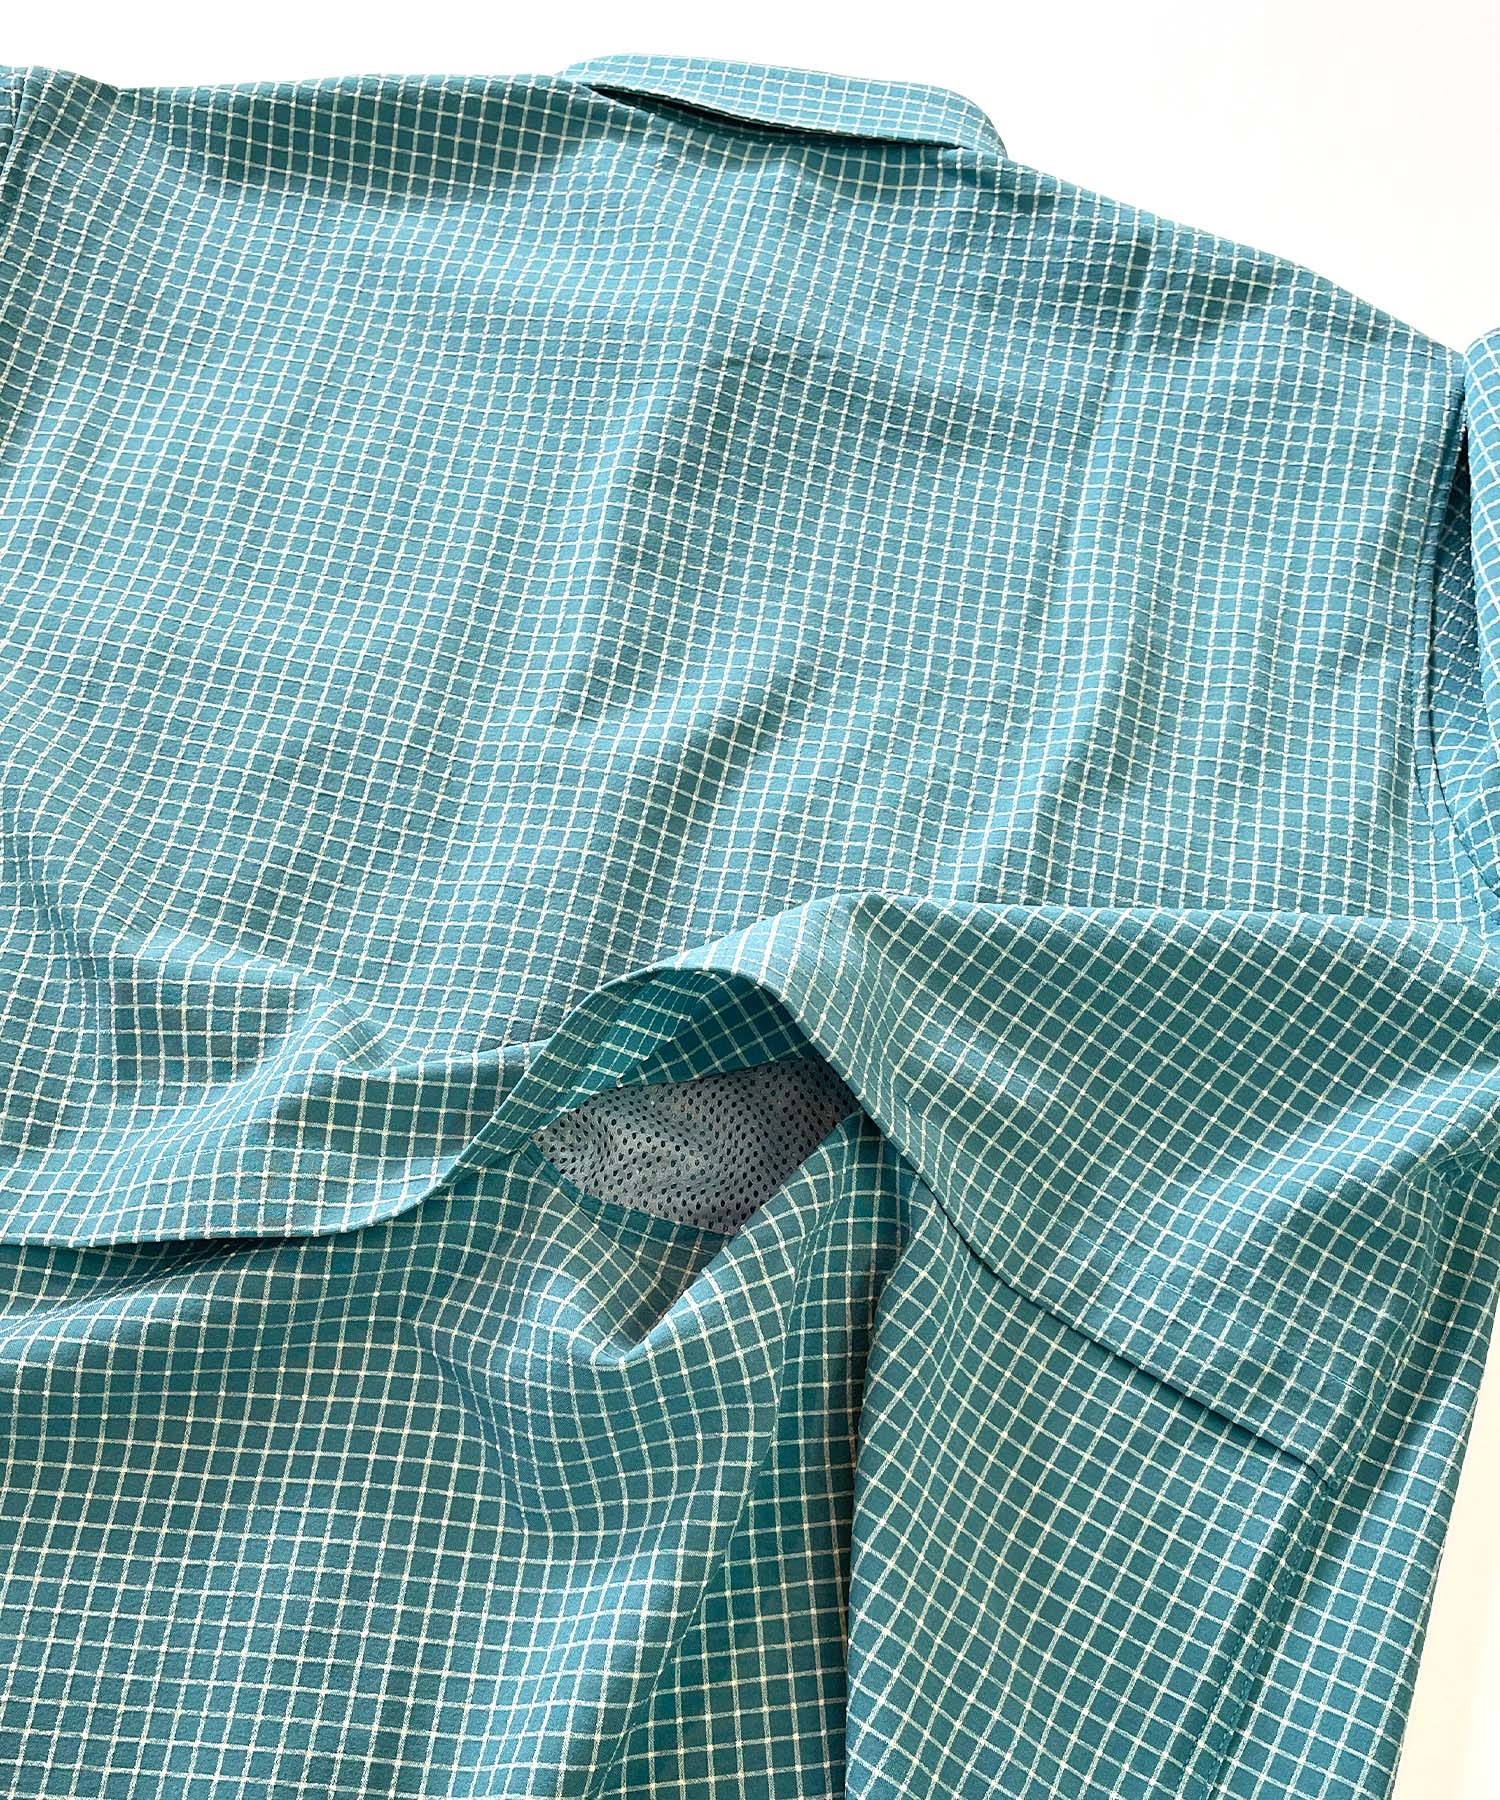 【マトメガイ対象】DEAR LAUREL ディアローレル メンズ ユーティリティーフラップシャツ 半袖 格子柄 Utility flap shirts D24S2401(OLV-M)